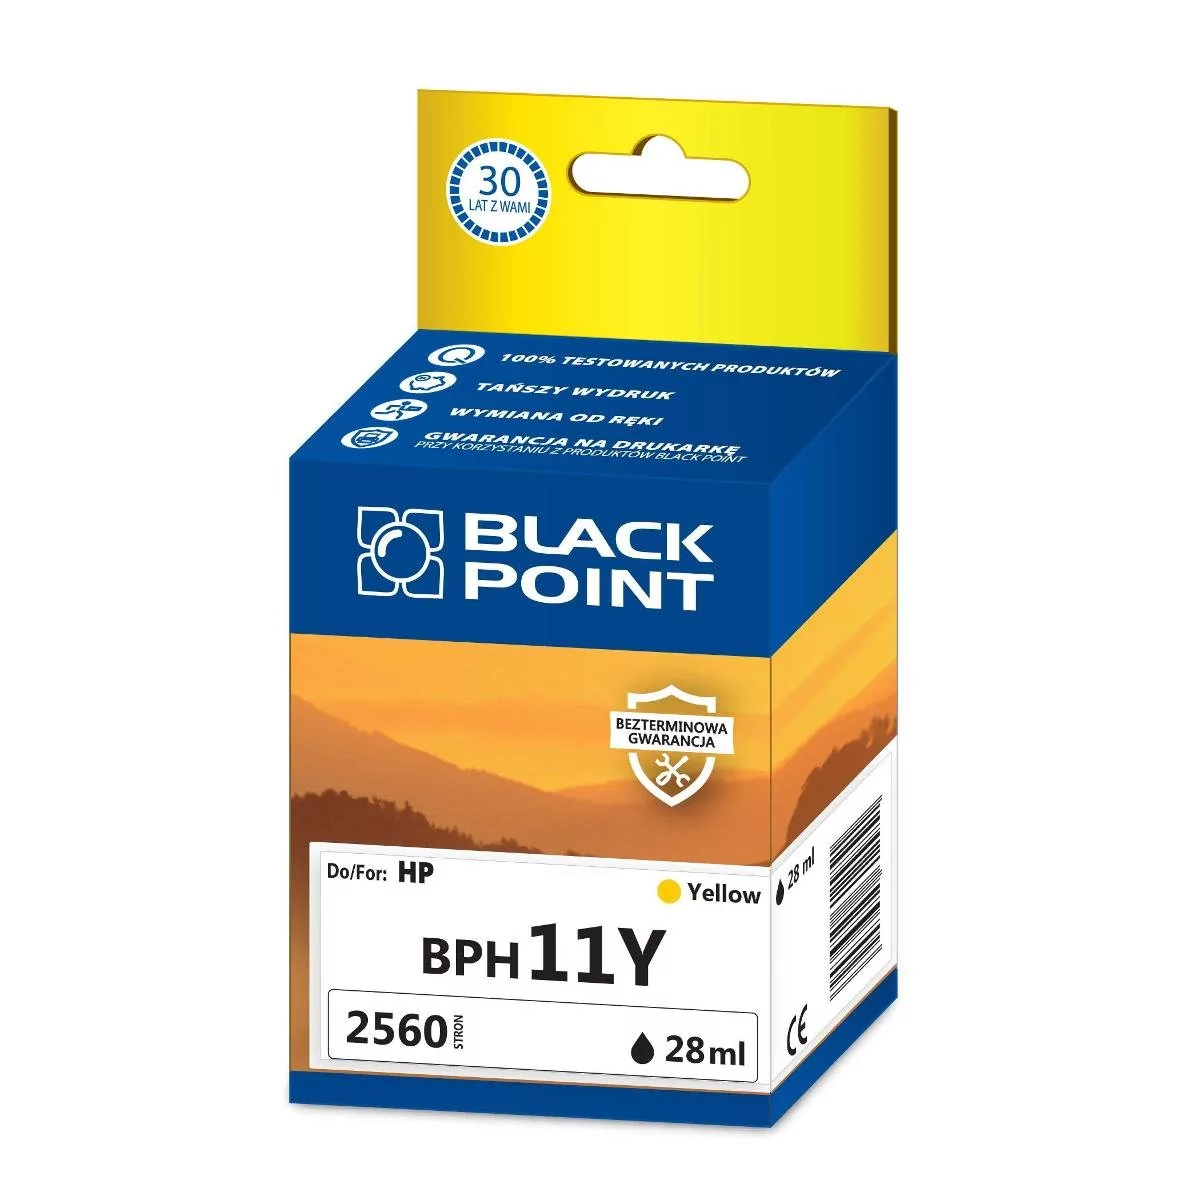 Black Point BPH11Y zamiennik HP C4838AE